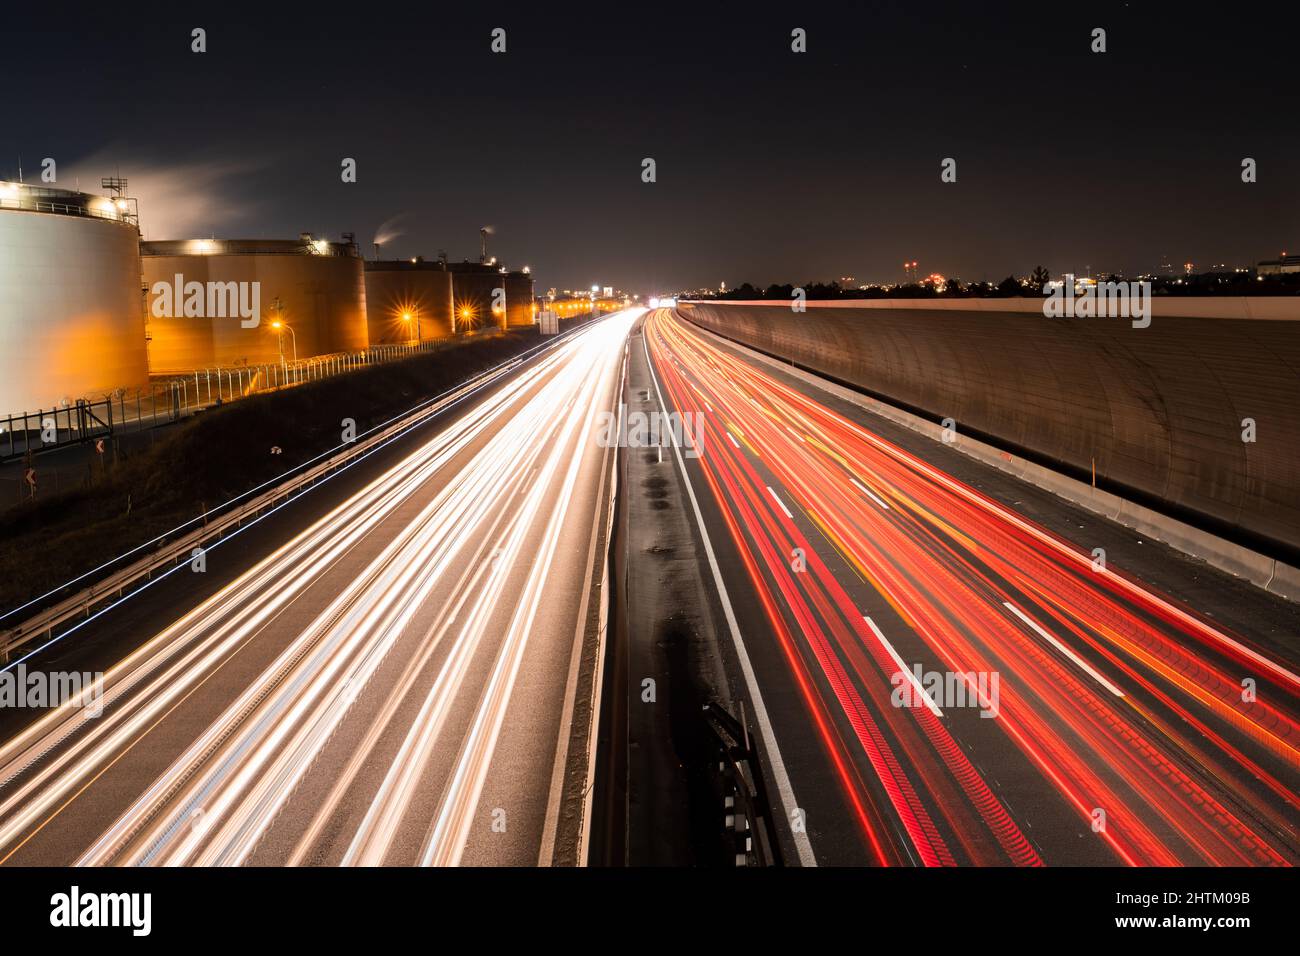 Percorsi leggeri di traffico auto su un'autostrada vicino a edifici industriali e una barriera di rumore di notte, cartolina calender idea concetto Foto Stock